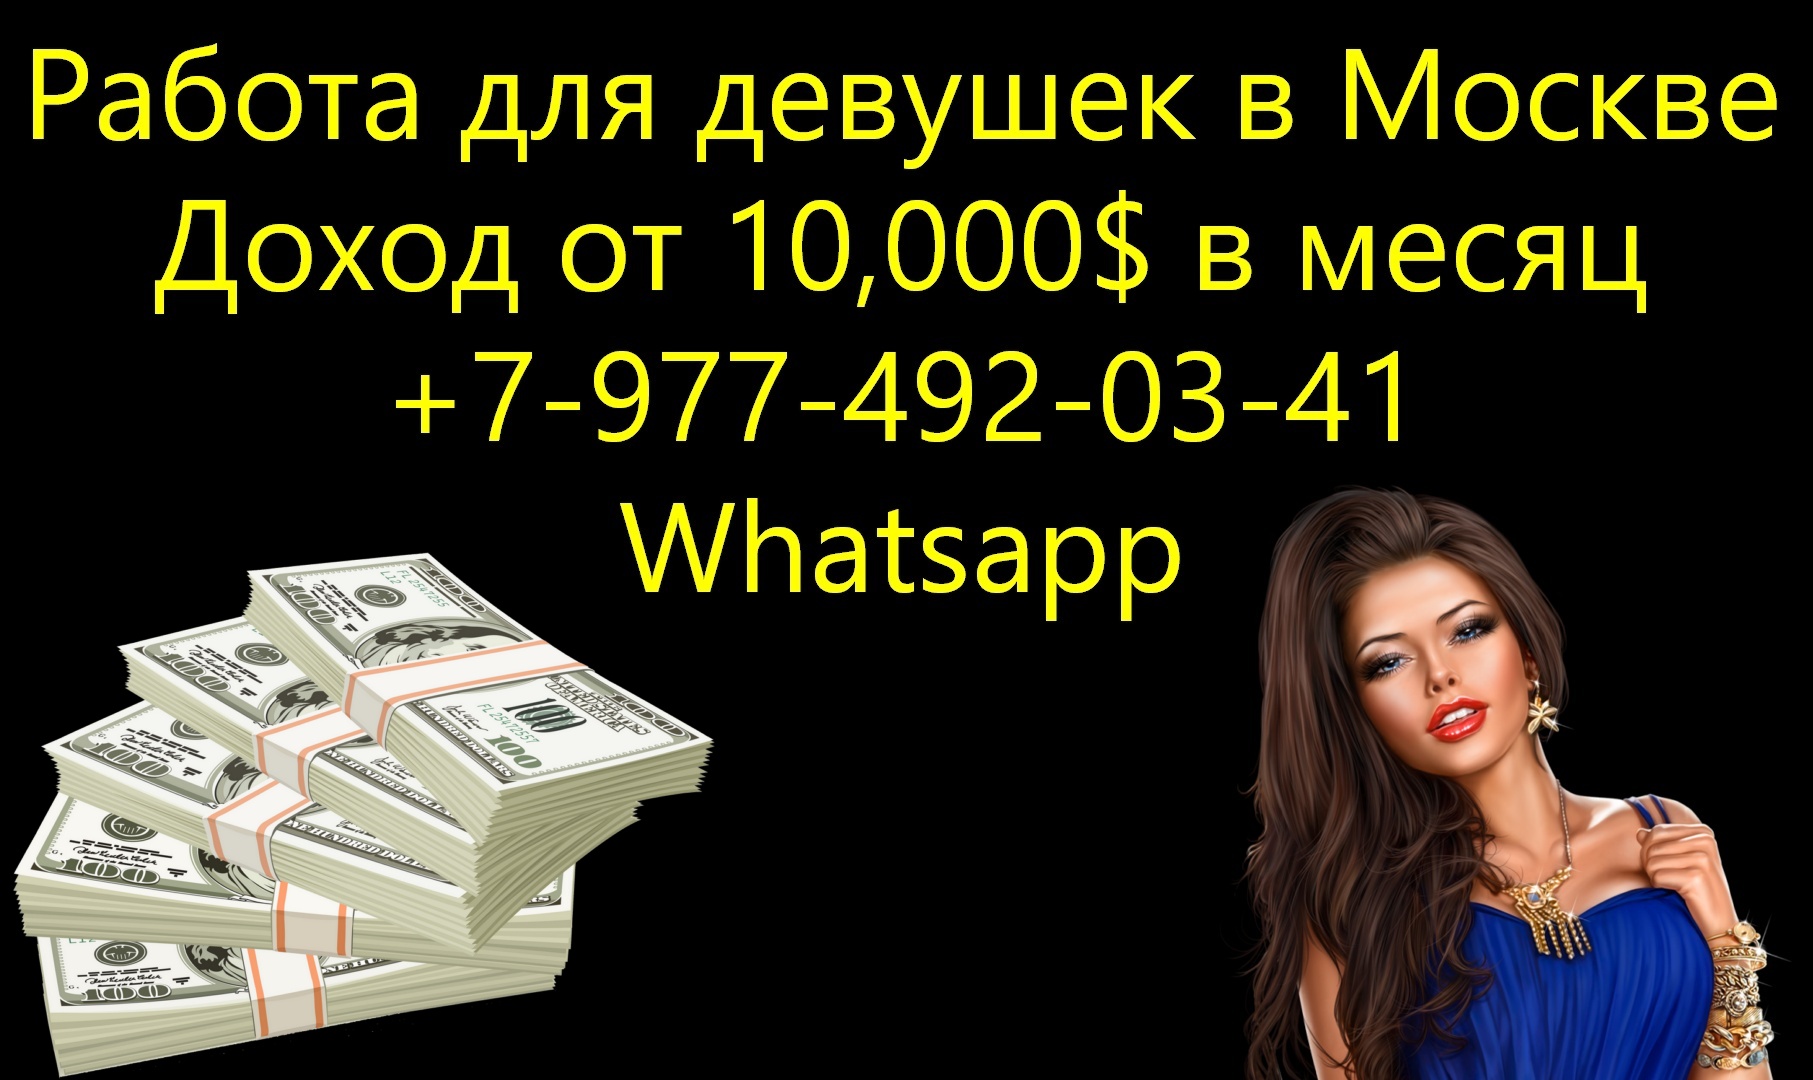 Доход от 10.000$ в месяц - работа для девушек в Москве в городе Москва, фото 1, телефон продавца: +7 (977) 492-03-41